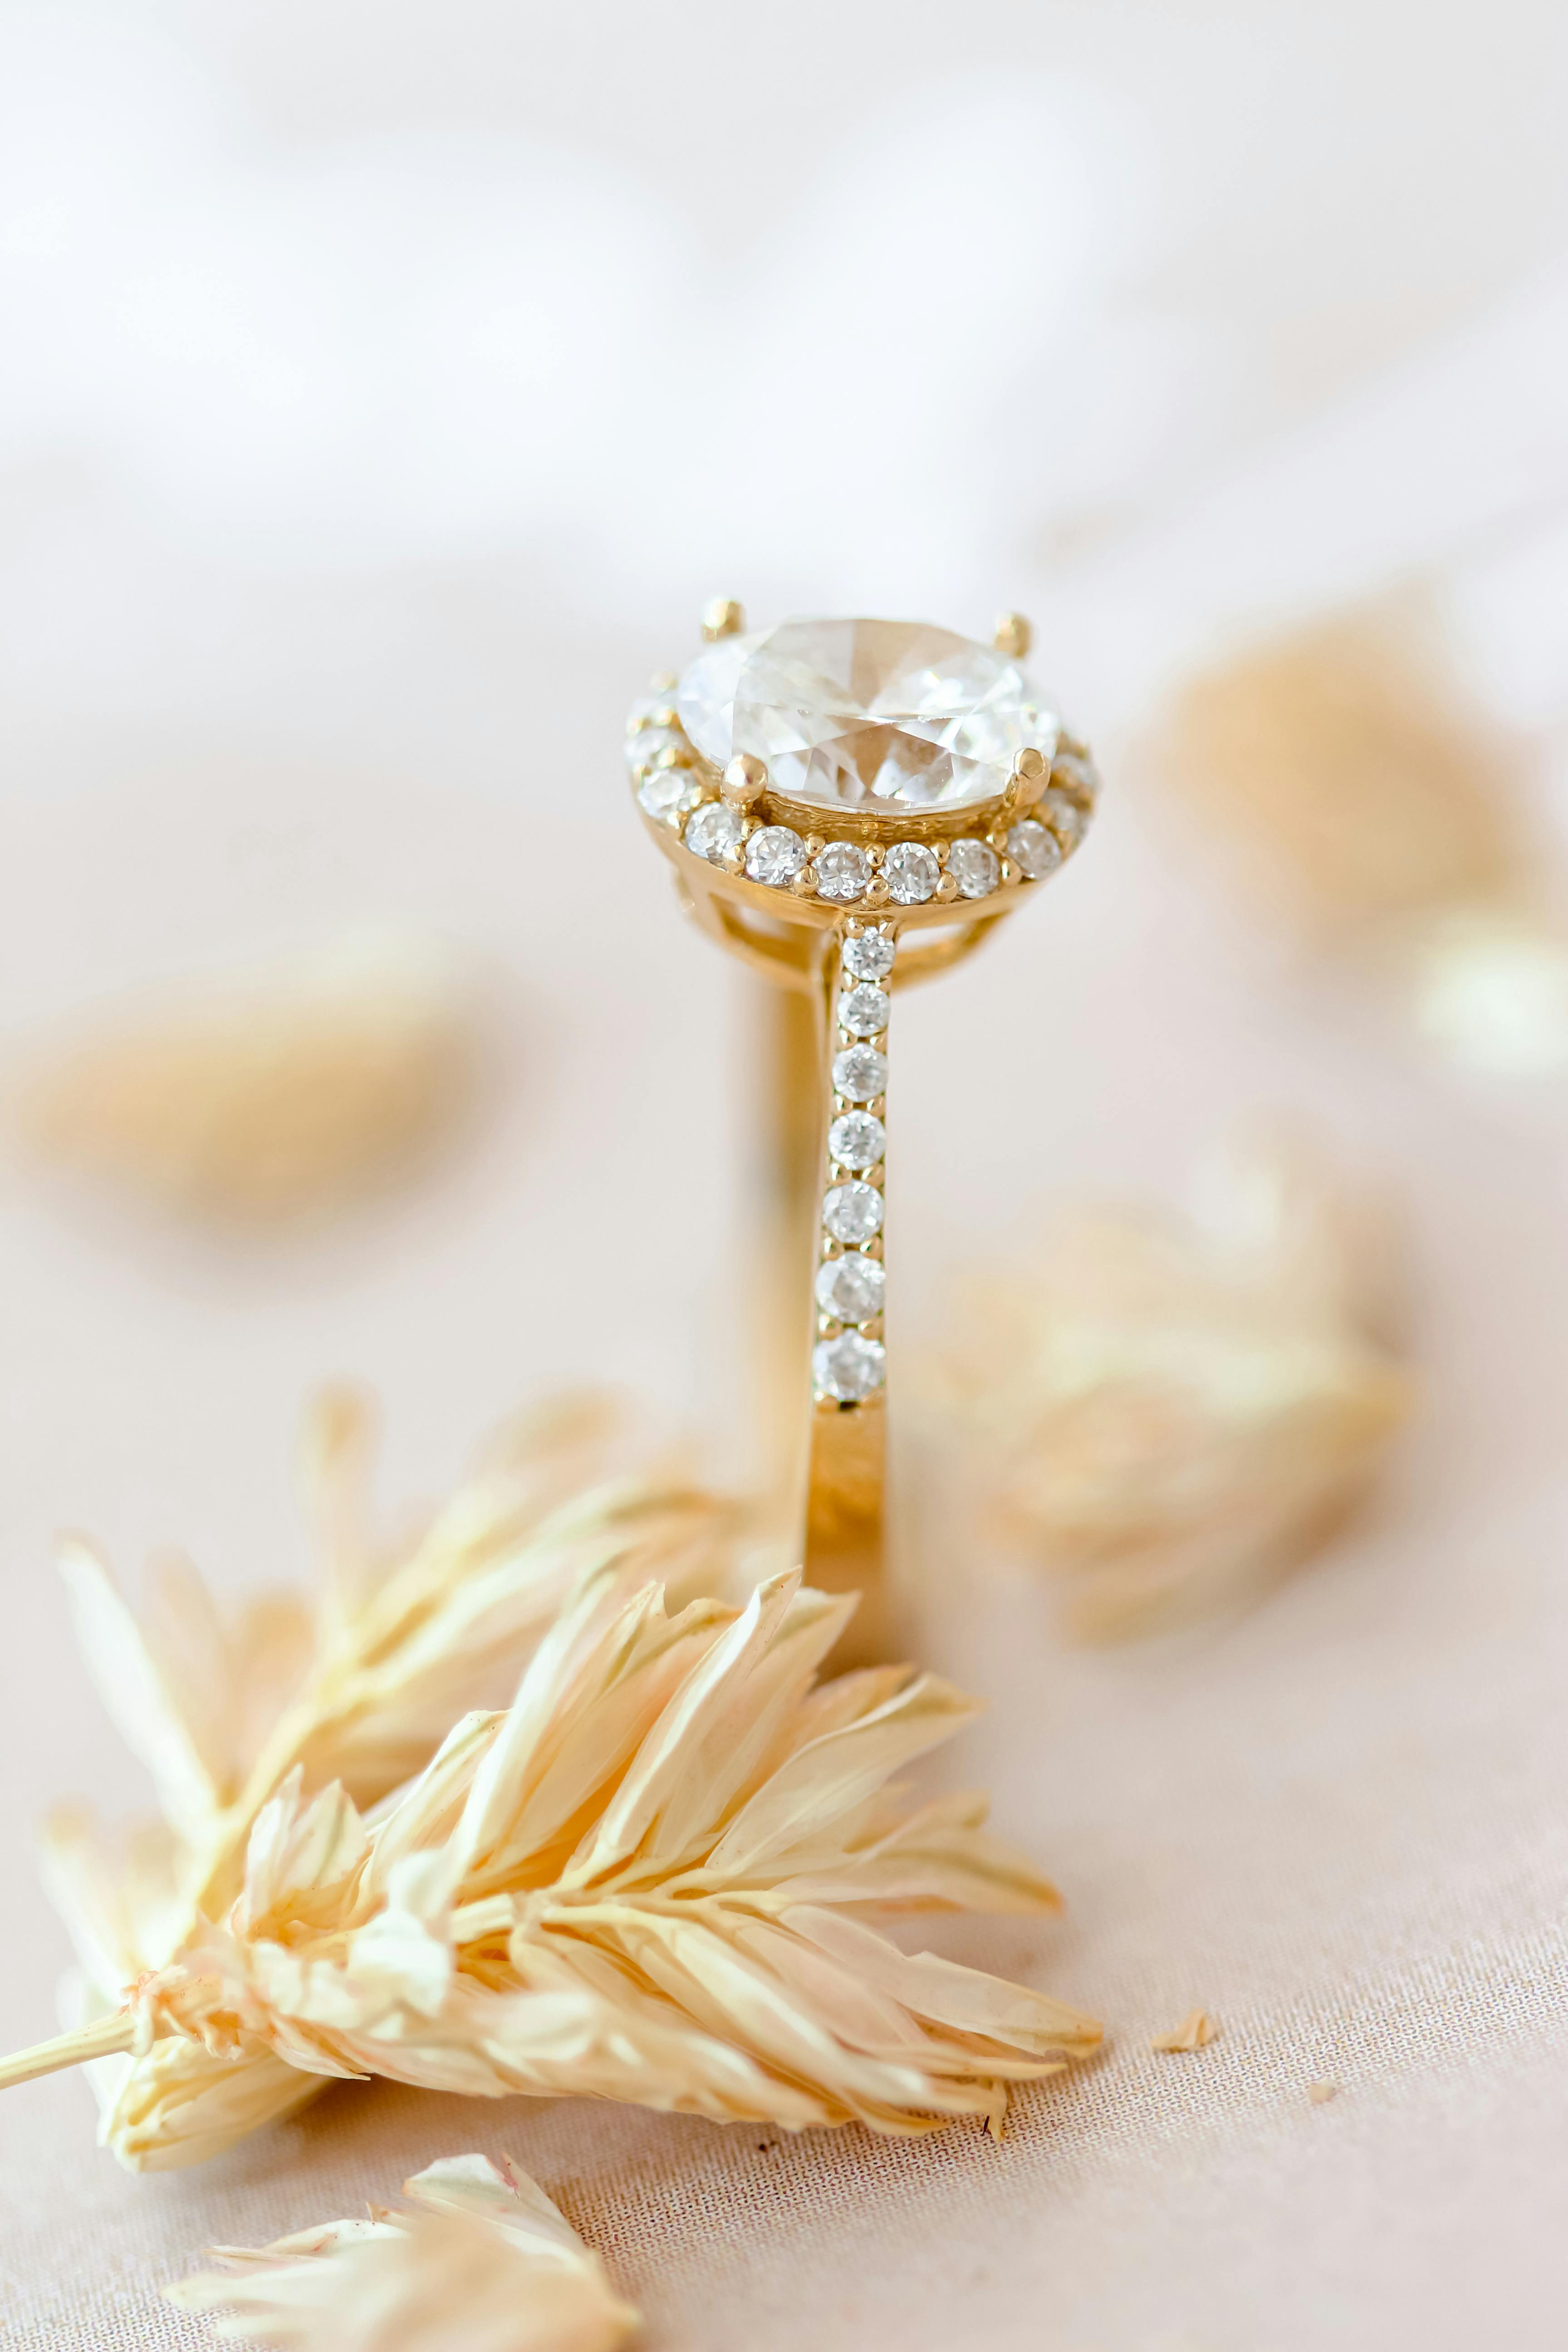 Une bague à diamant en or jaune | Source : Pexels